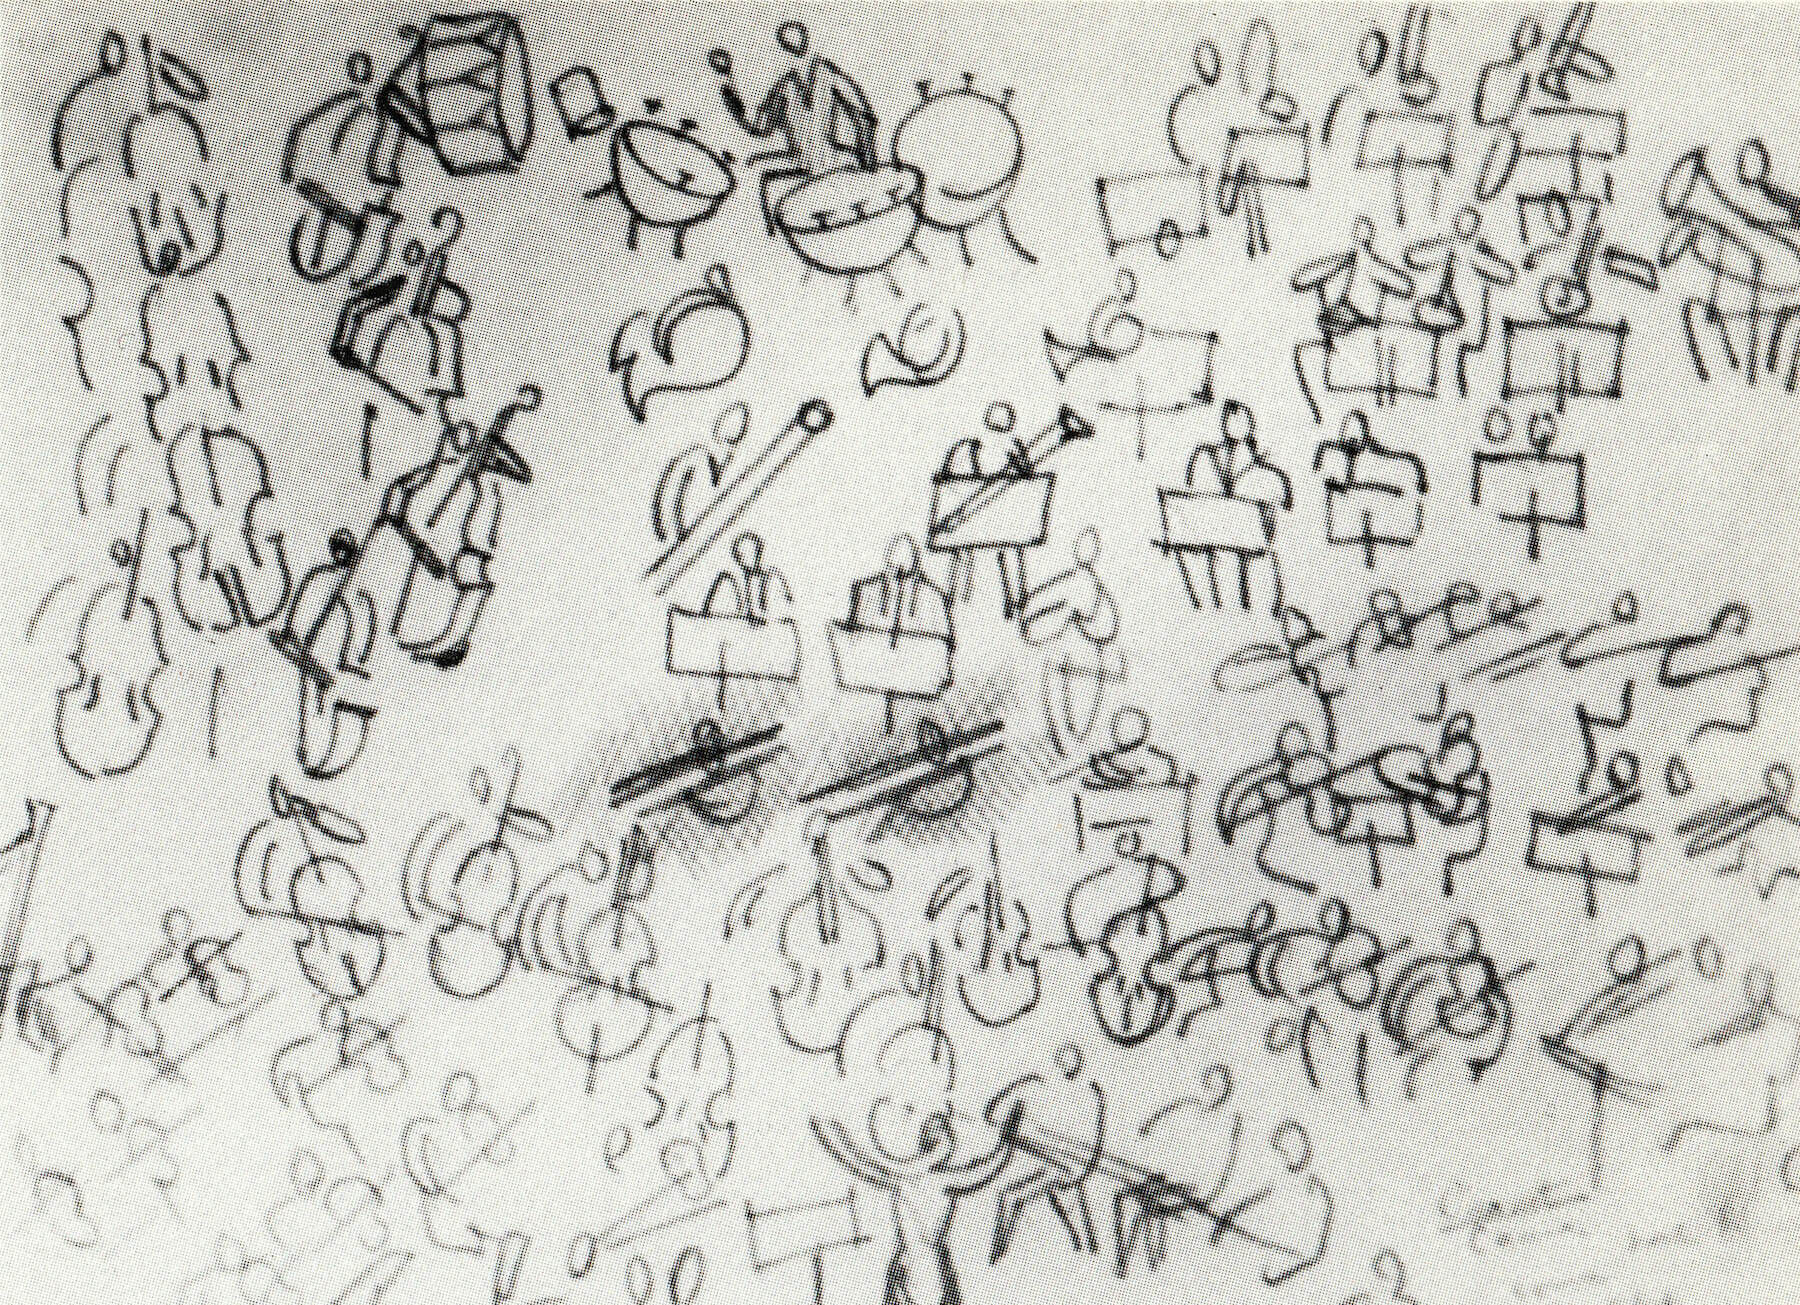 Raoul Dufy, Orchestre, c. 1942, pencil, 16 x 24.8 cm, 6 ¼ x 9 ⅝ inches